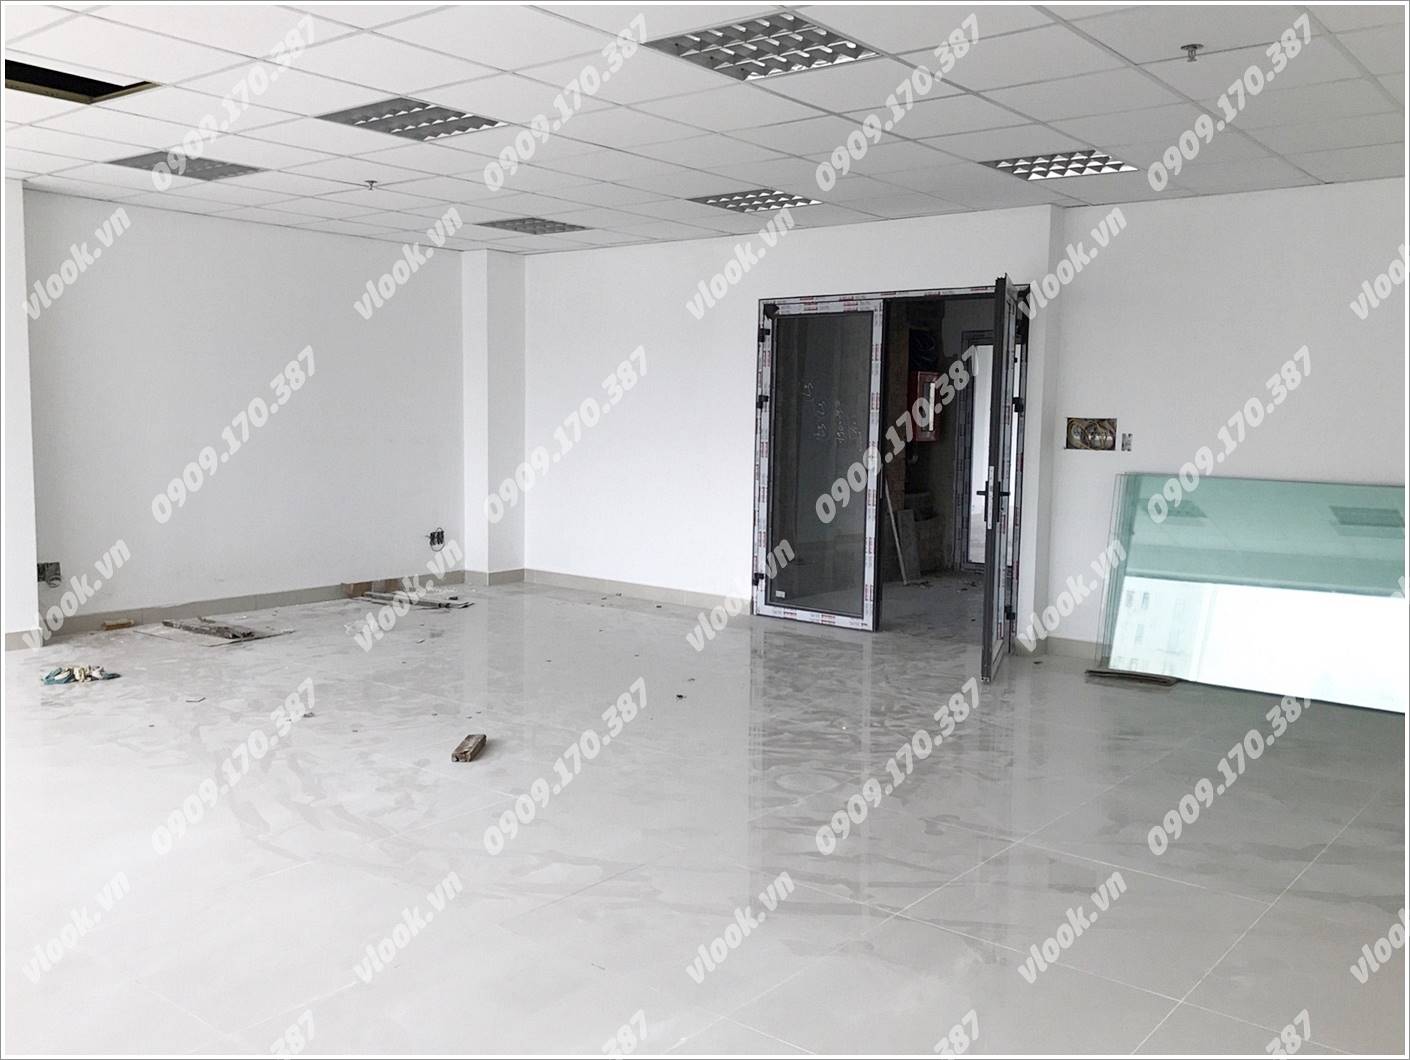 Cao ốc văn phòng cho thuê Deli Office Nguyễn Văn Trỗi, Quận Phú Nhuận, TPHCM - vlook.vn